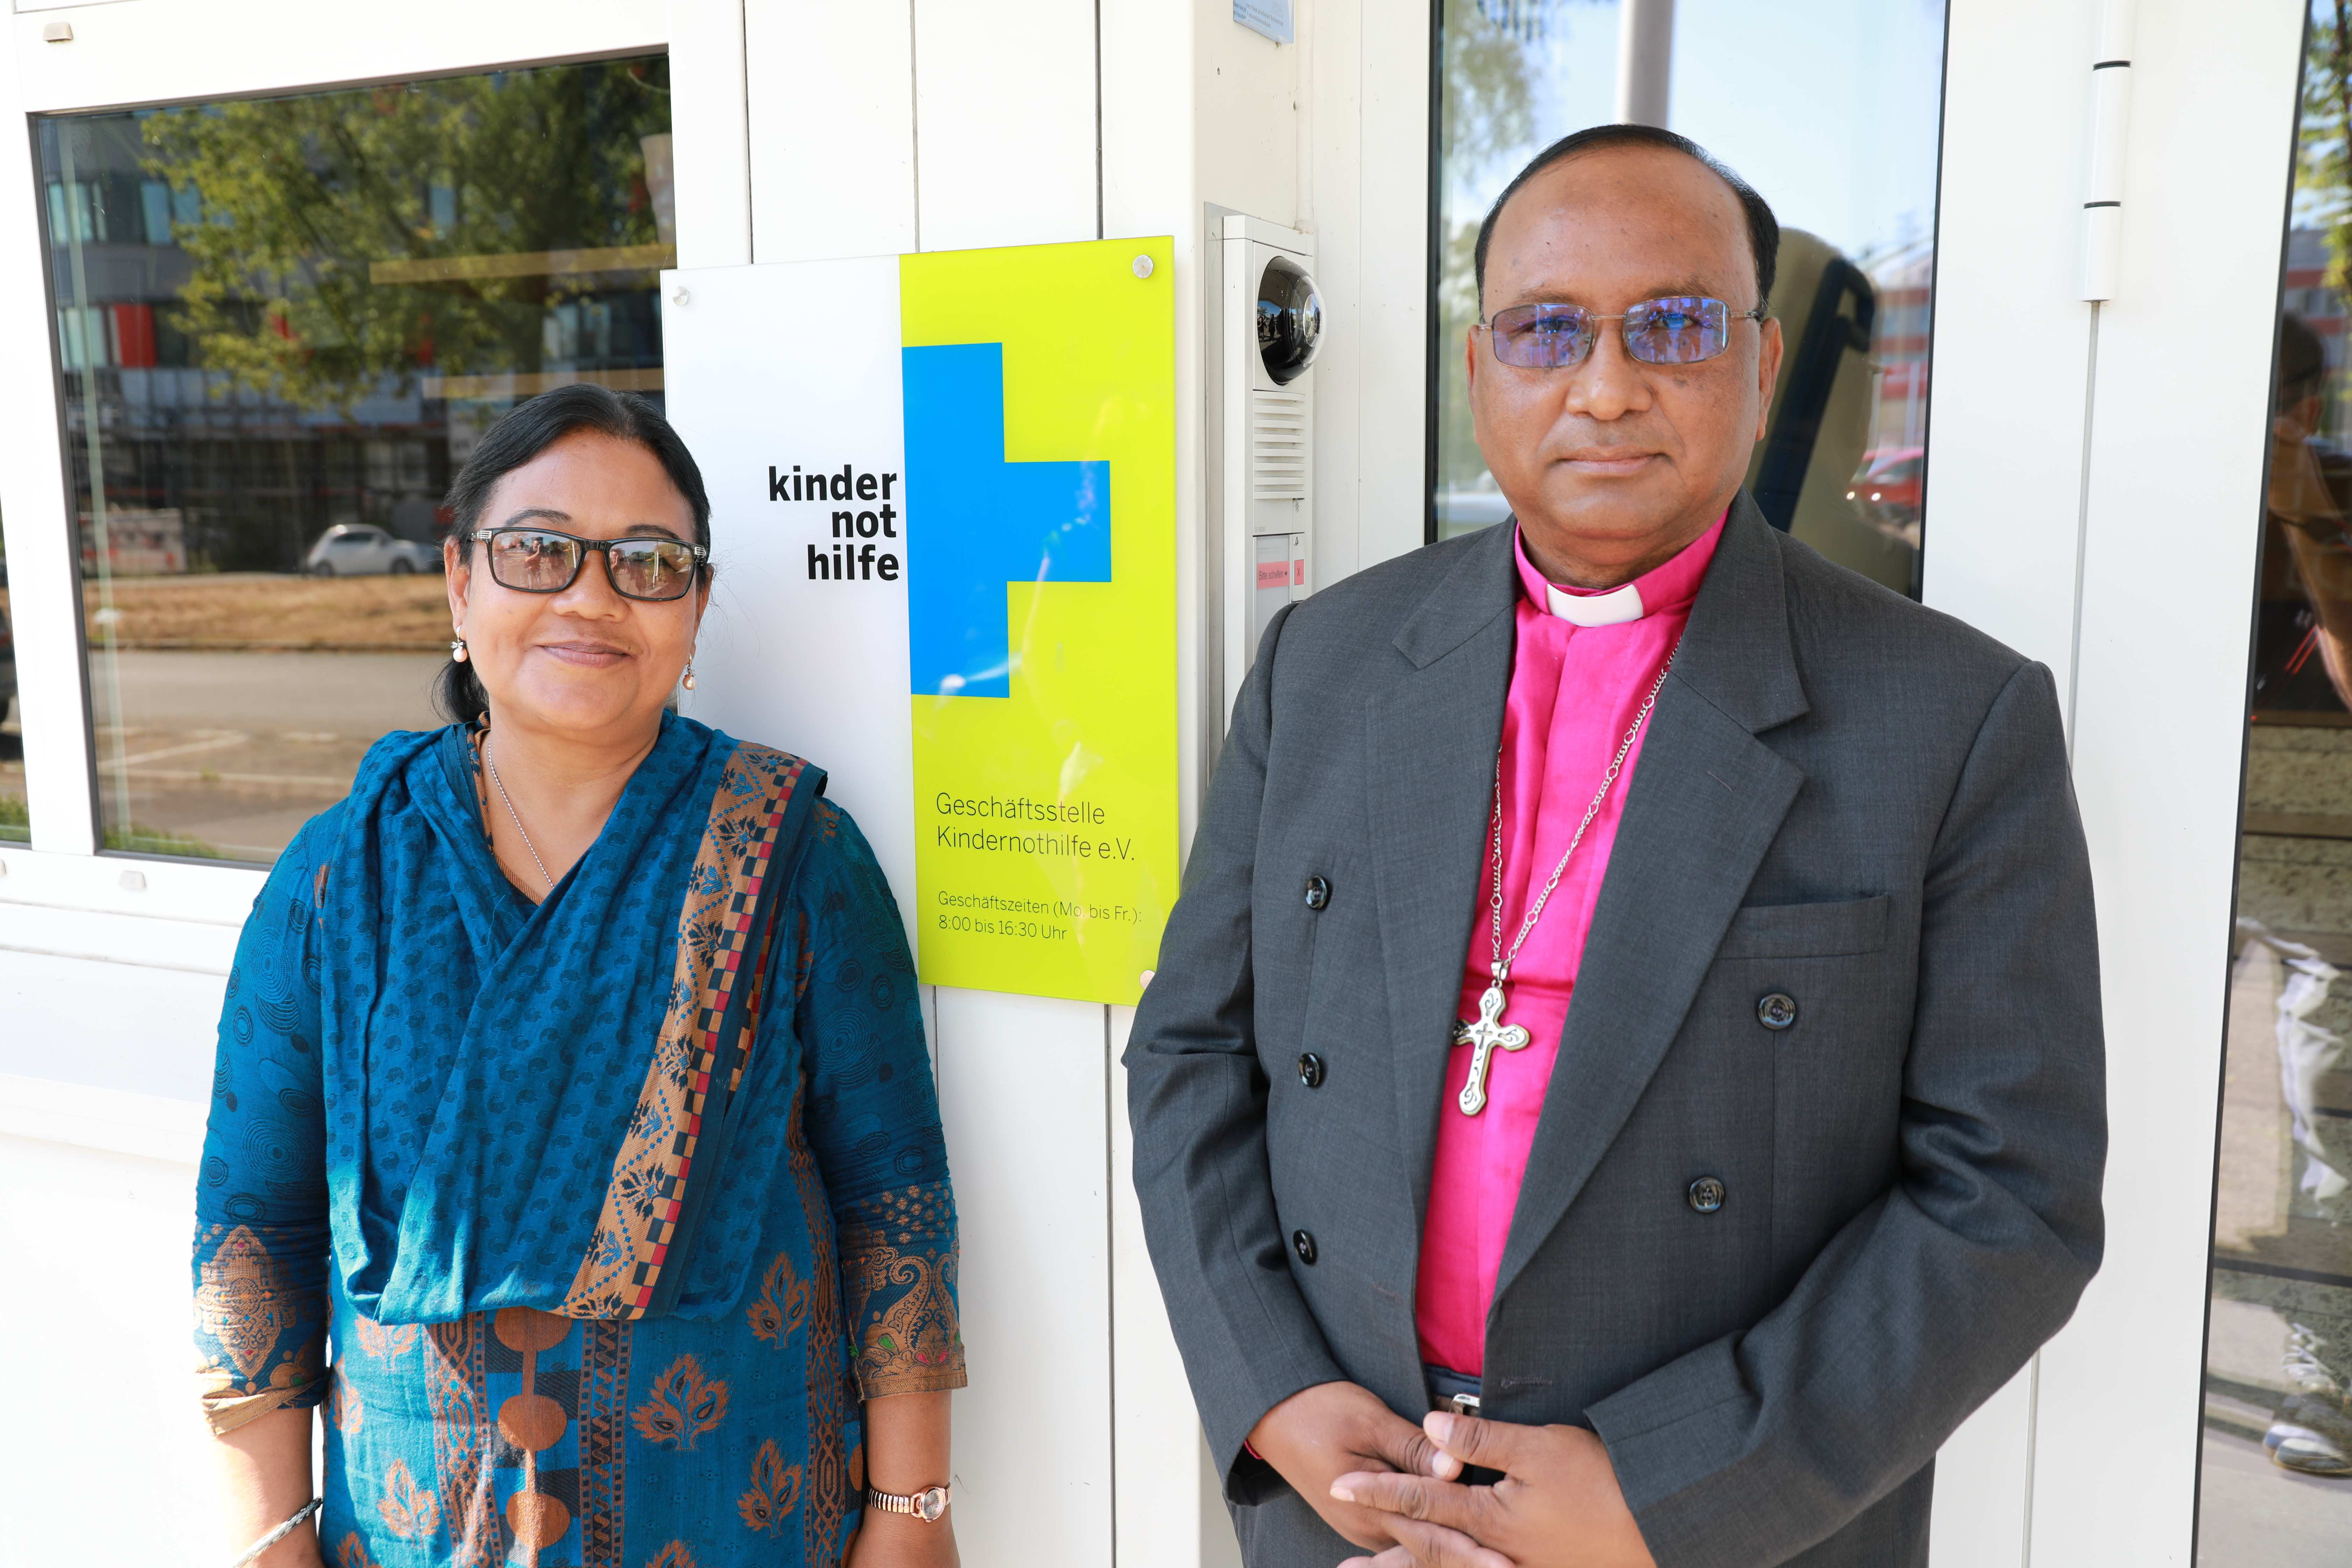 Monita Mankhin und ihr Mann, Bischof Samuel Sunil Mankhin vor der Kindernothilfe-Geschäftsstelle - beide sind ehemalige Patenkinder (Quelle: Ralf Krämer)